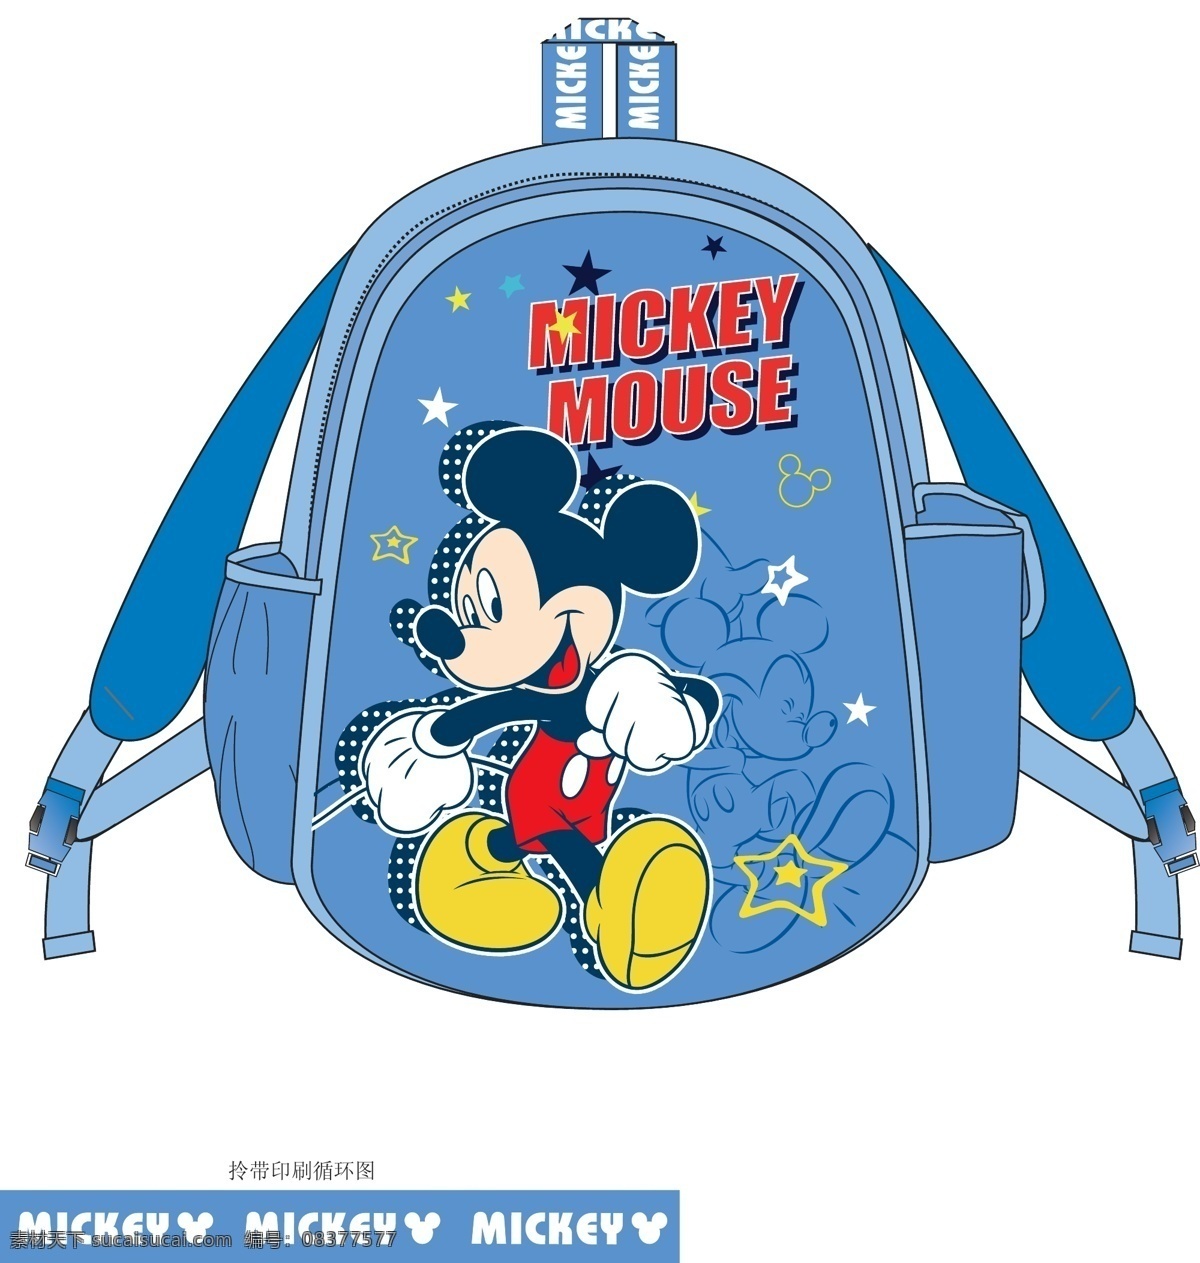 迪士尼 米奇 书包 米奇书包 米老鼠 卡通 可爱 男孩书包 背包 disney mickey 设计素材 源文件 矢量素材 其他矢量 矢量